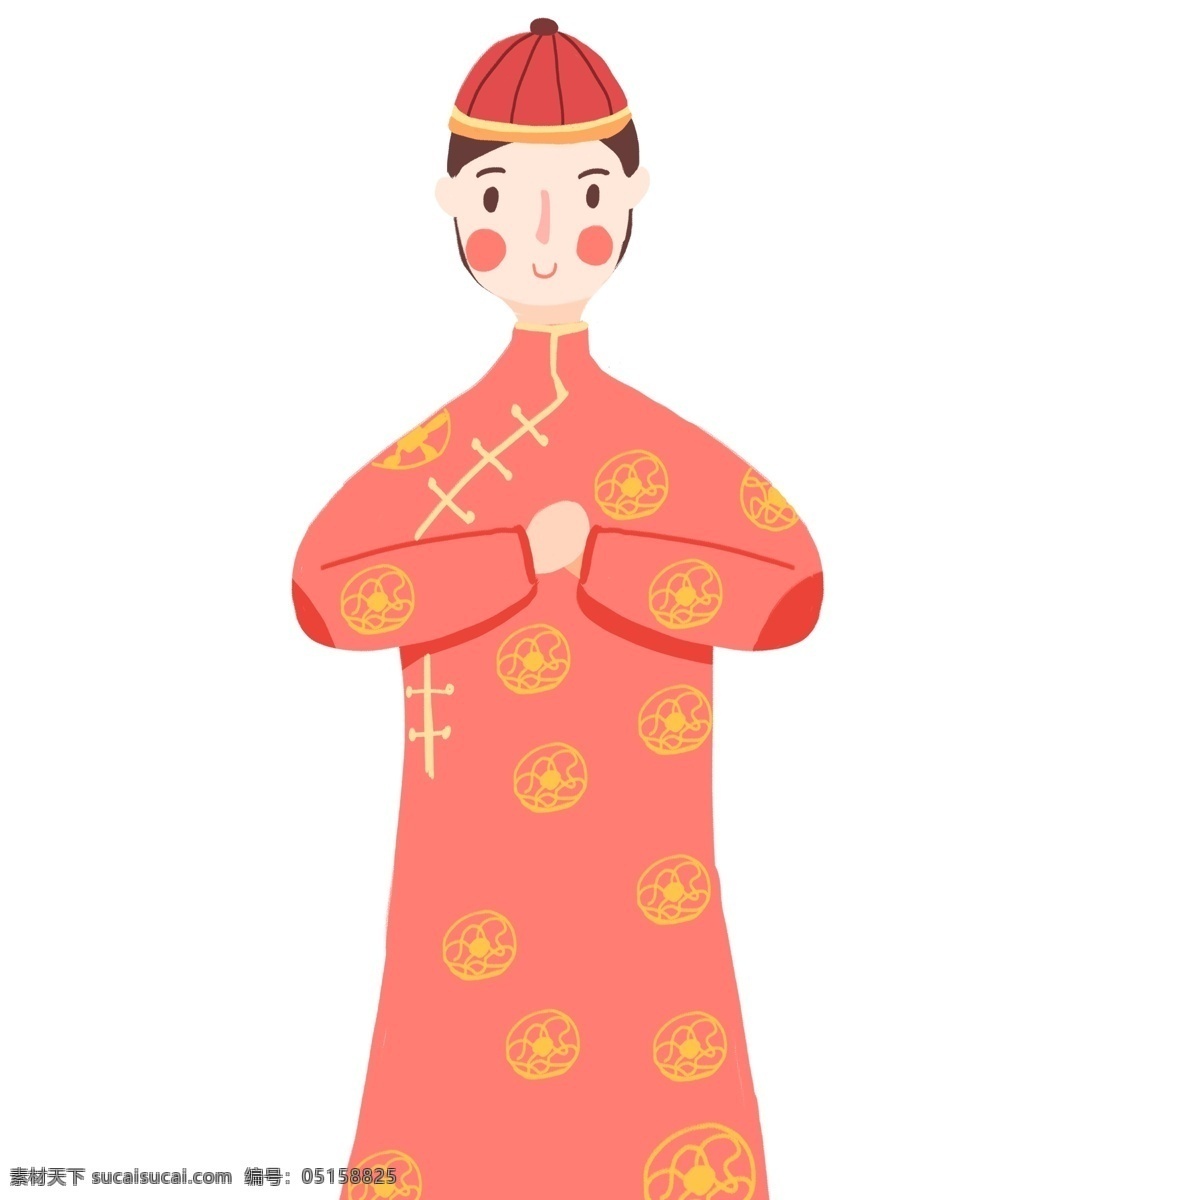 扁平 中国 风 穿 唐装 拜年 男人 春节 喜庆 扁平化 中国风 插画 卡通 手绘 新年 人物设计